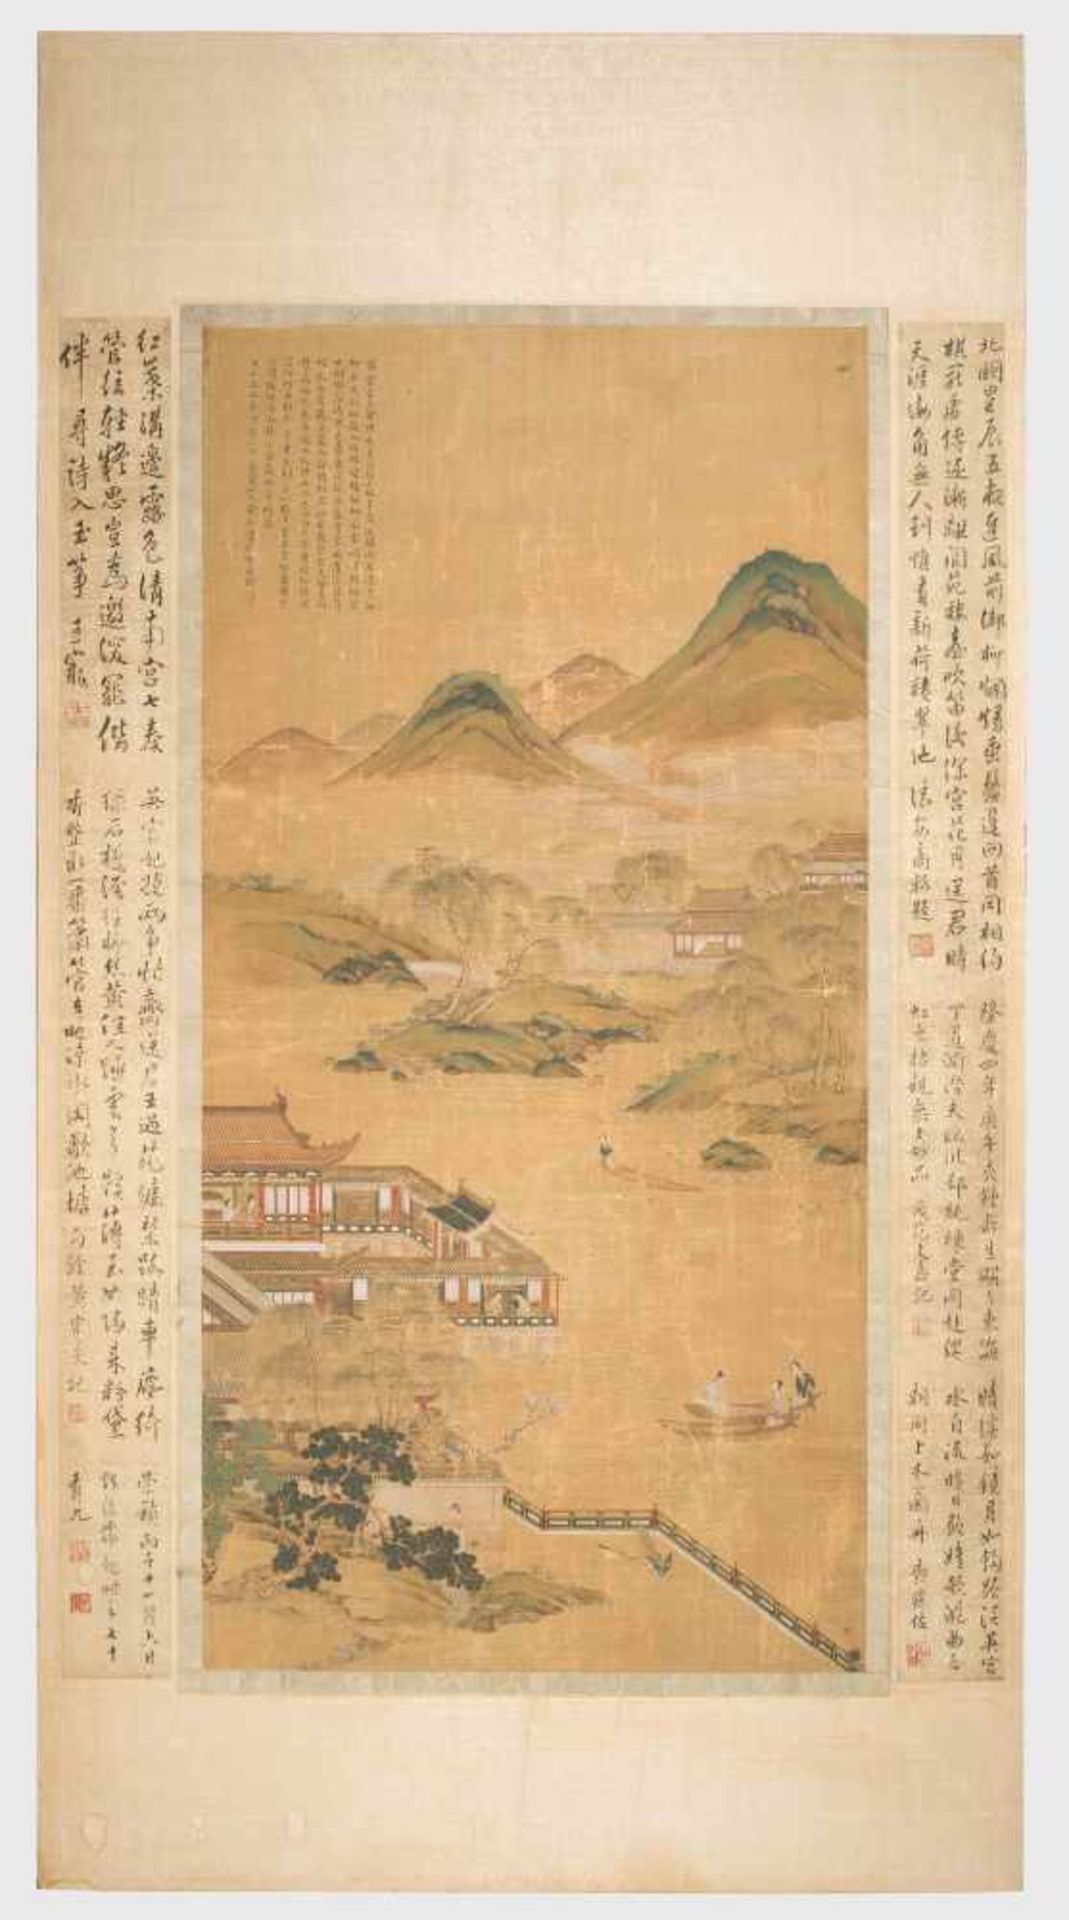 Malerei im Stil von Zhao Boju (c.1120–c.1185)China, Qing-Dynastie. Tusche und Farben auf Seide. - Bild 2 aus 10